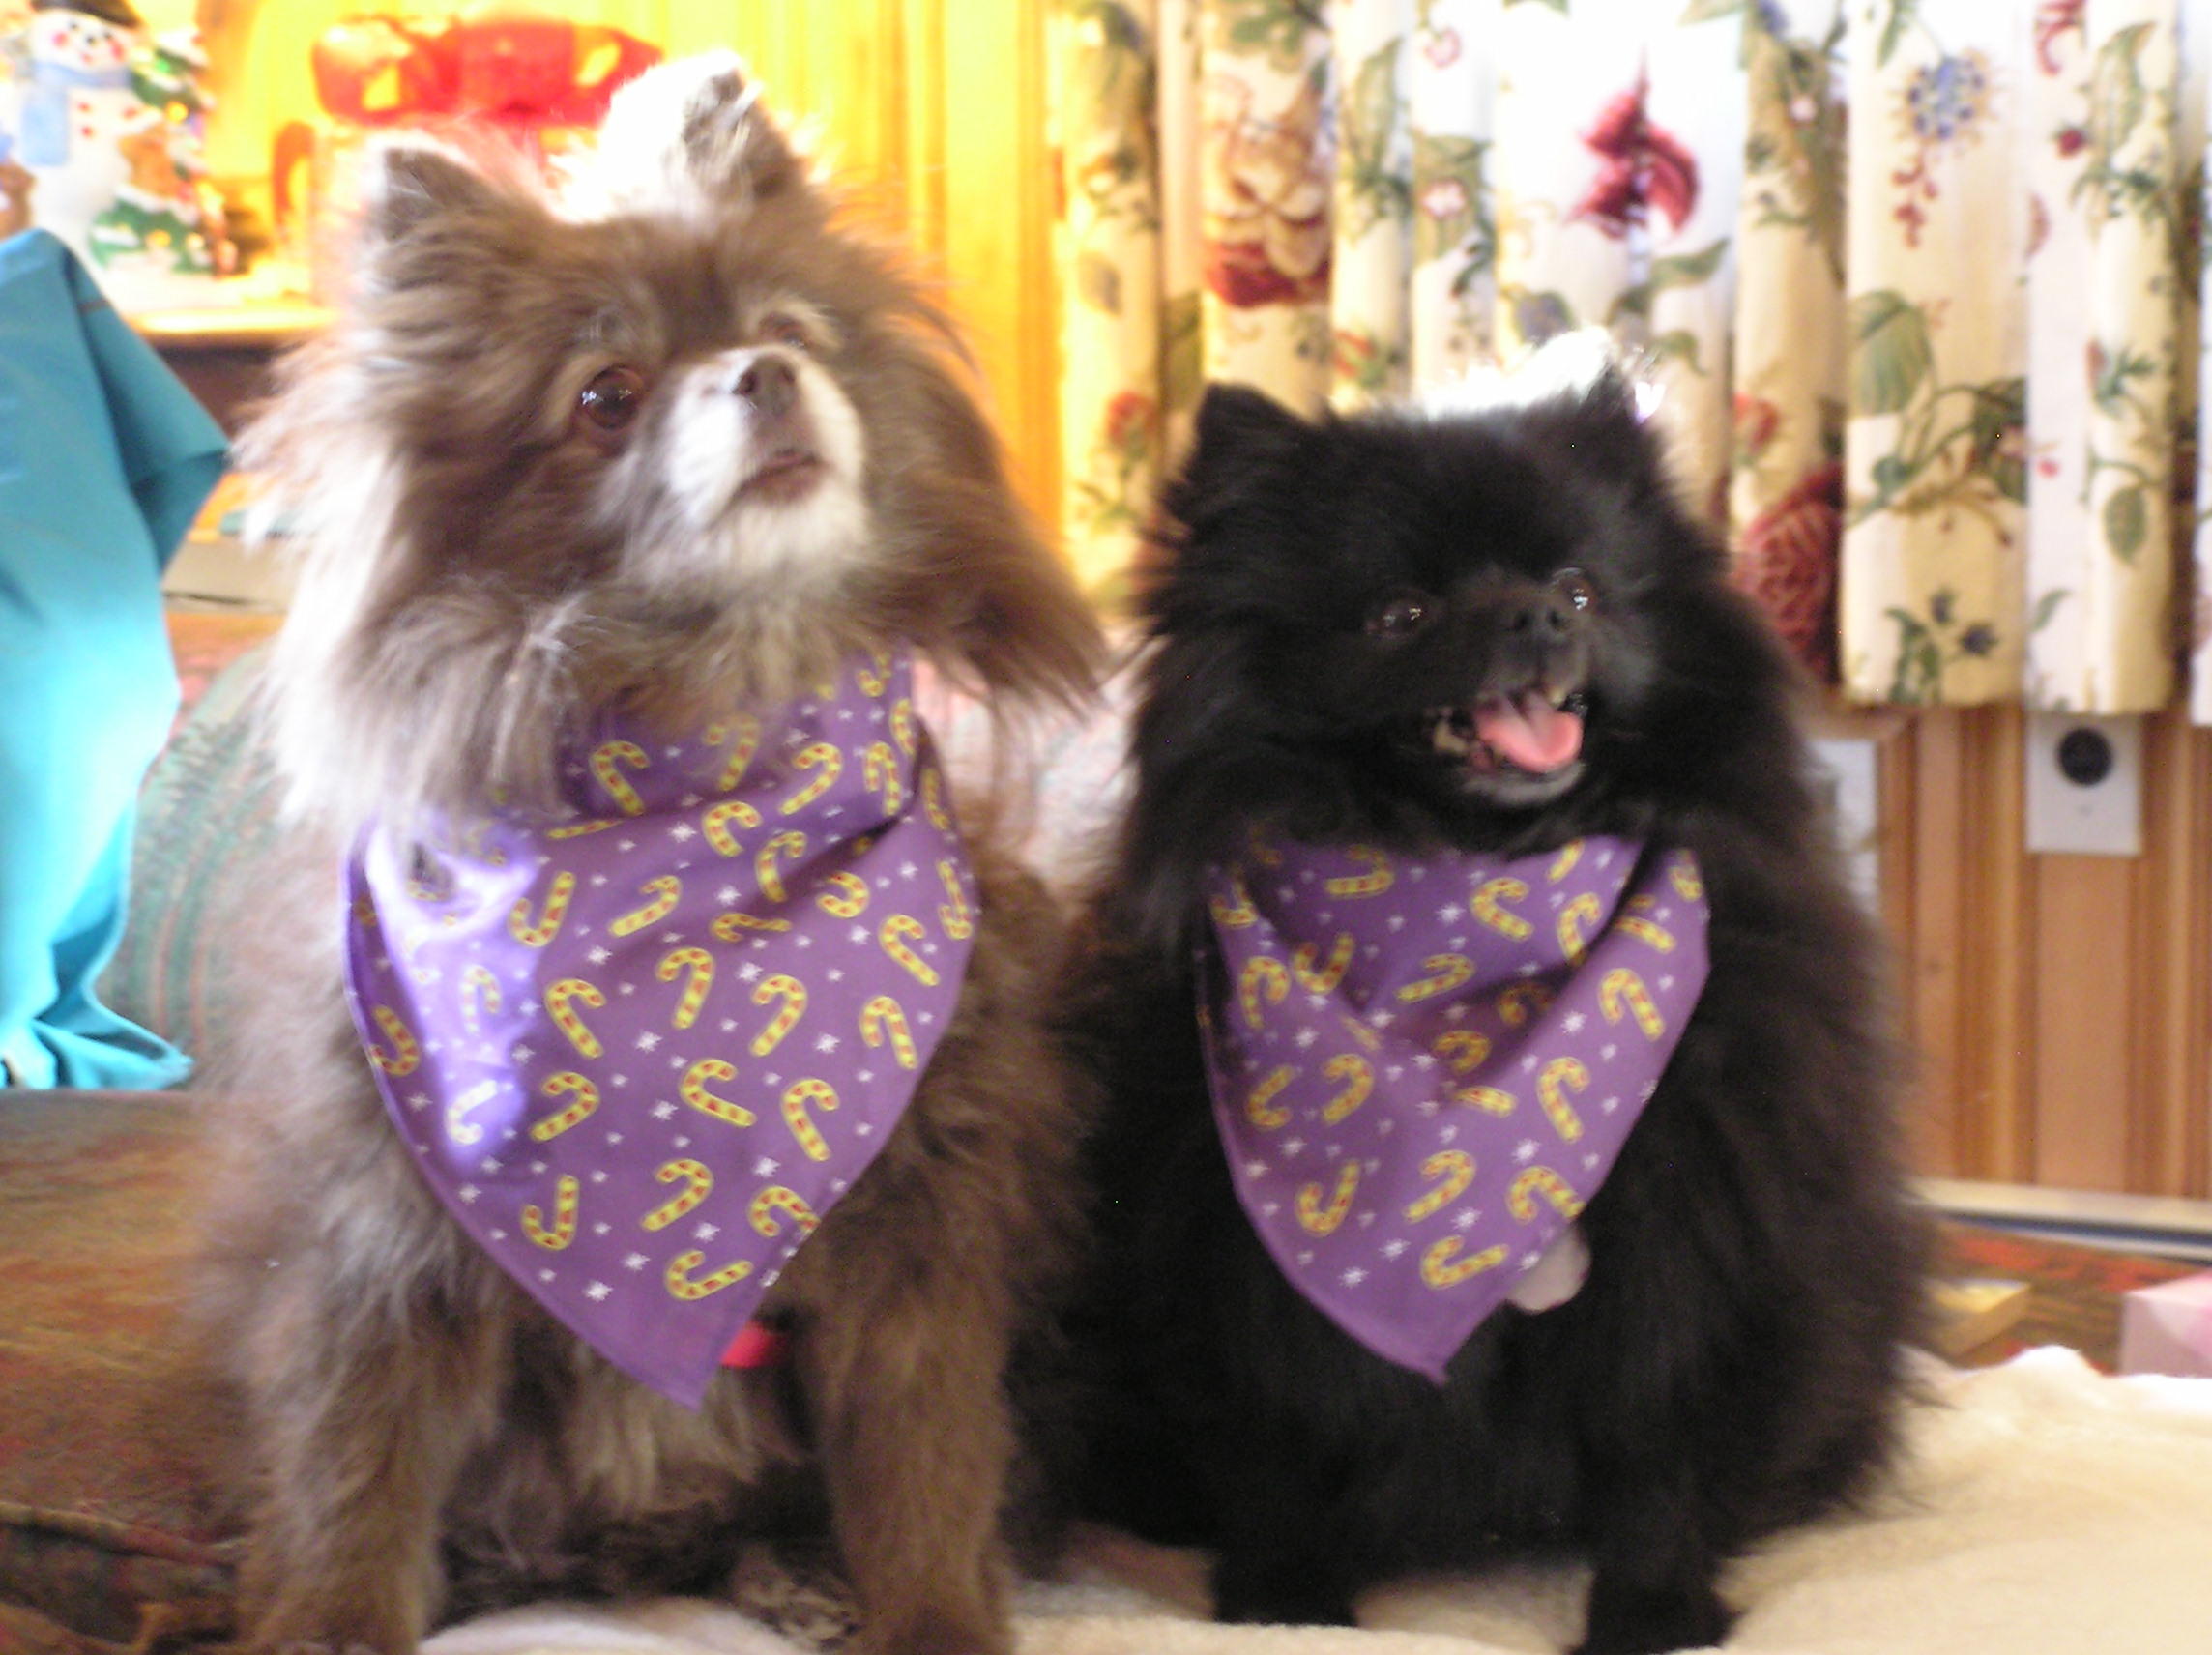 Kameko and Binka with their 2010 Christmas scarves